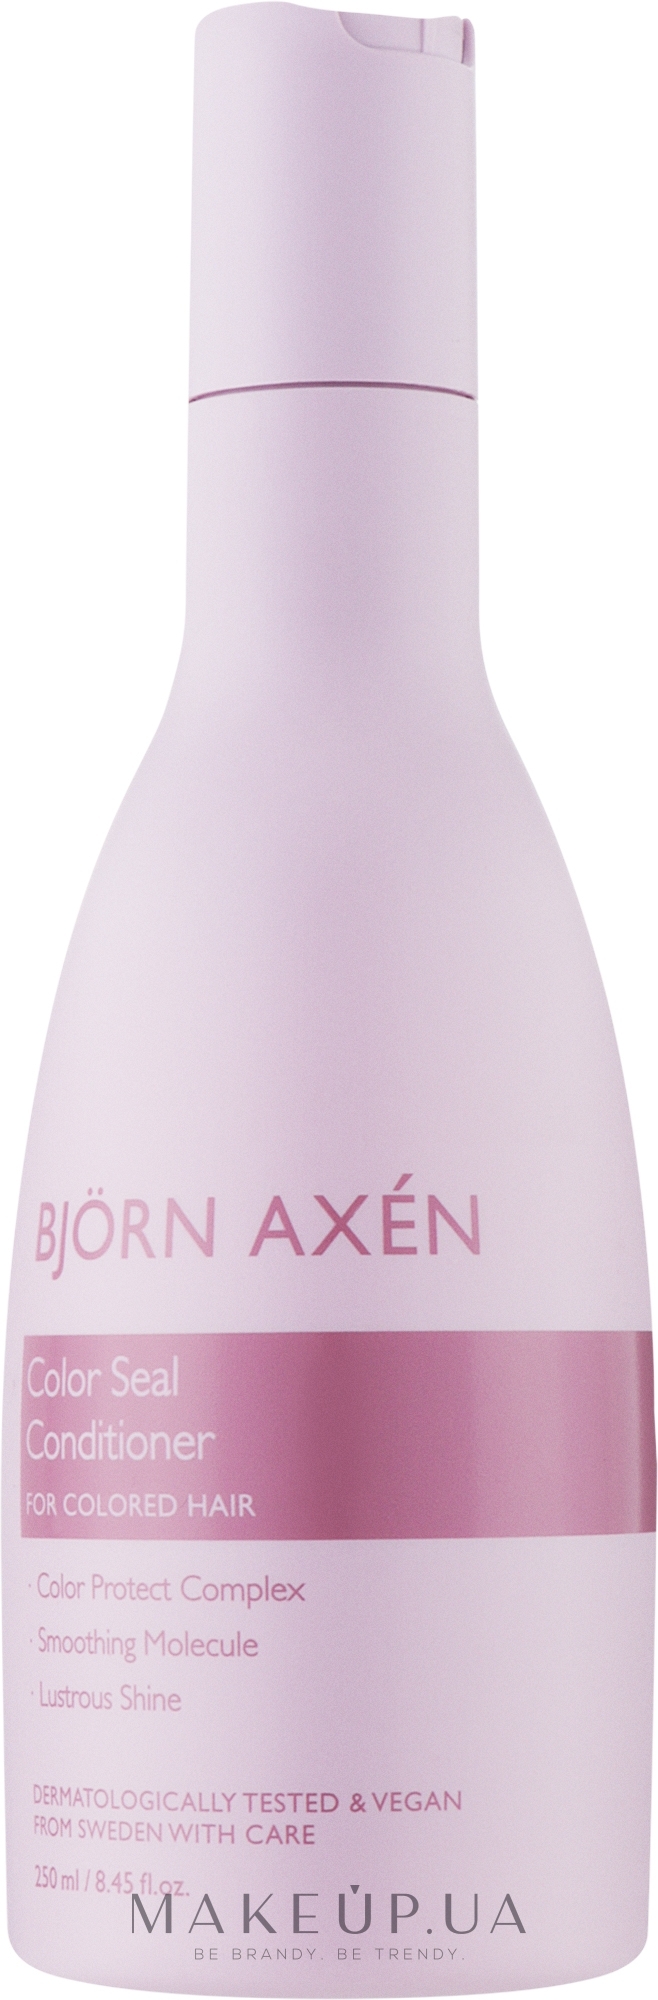 Кондиціонер для фарбованого волосся - Bjorn Axen Color Seal Conditioner — фото 250ml